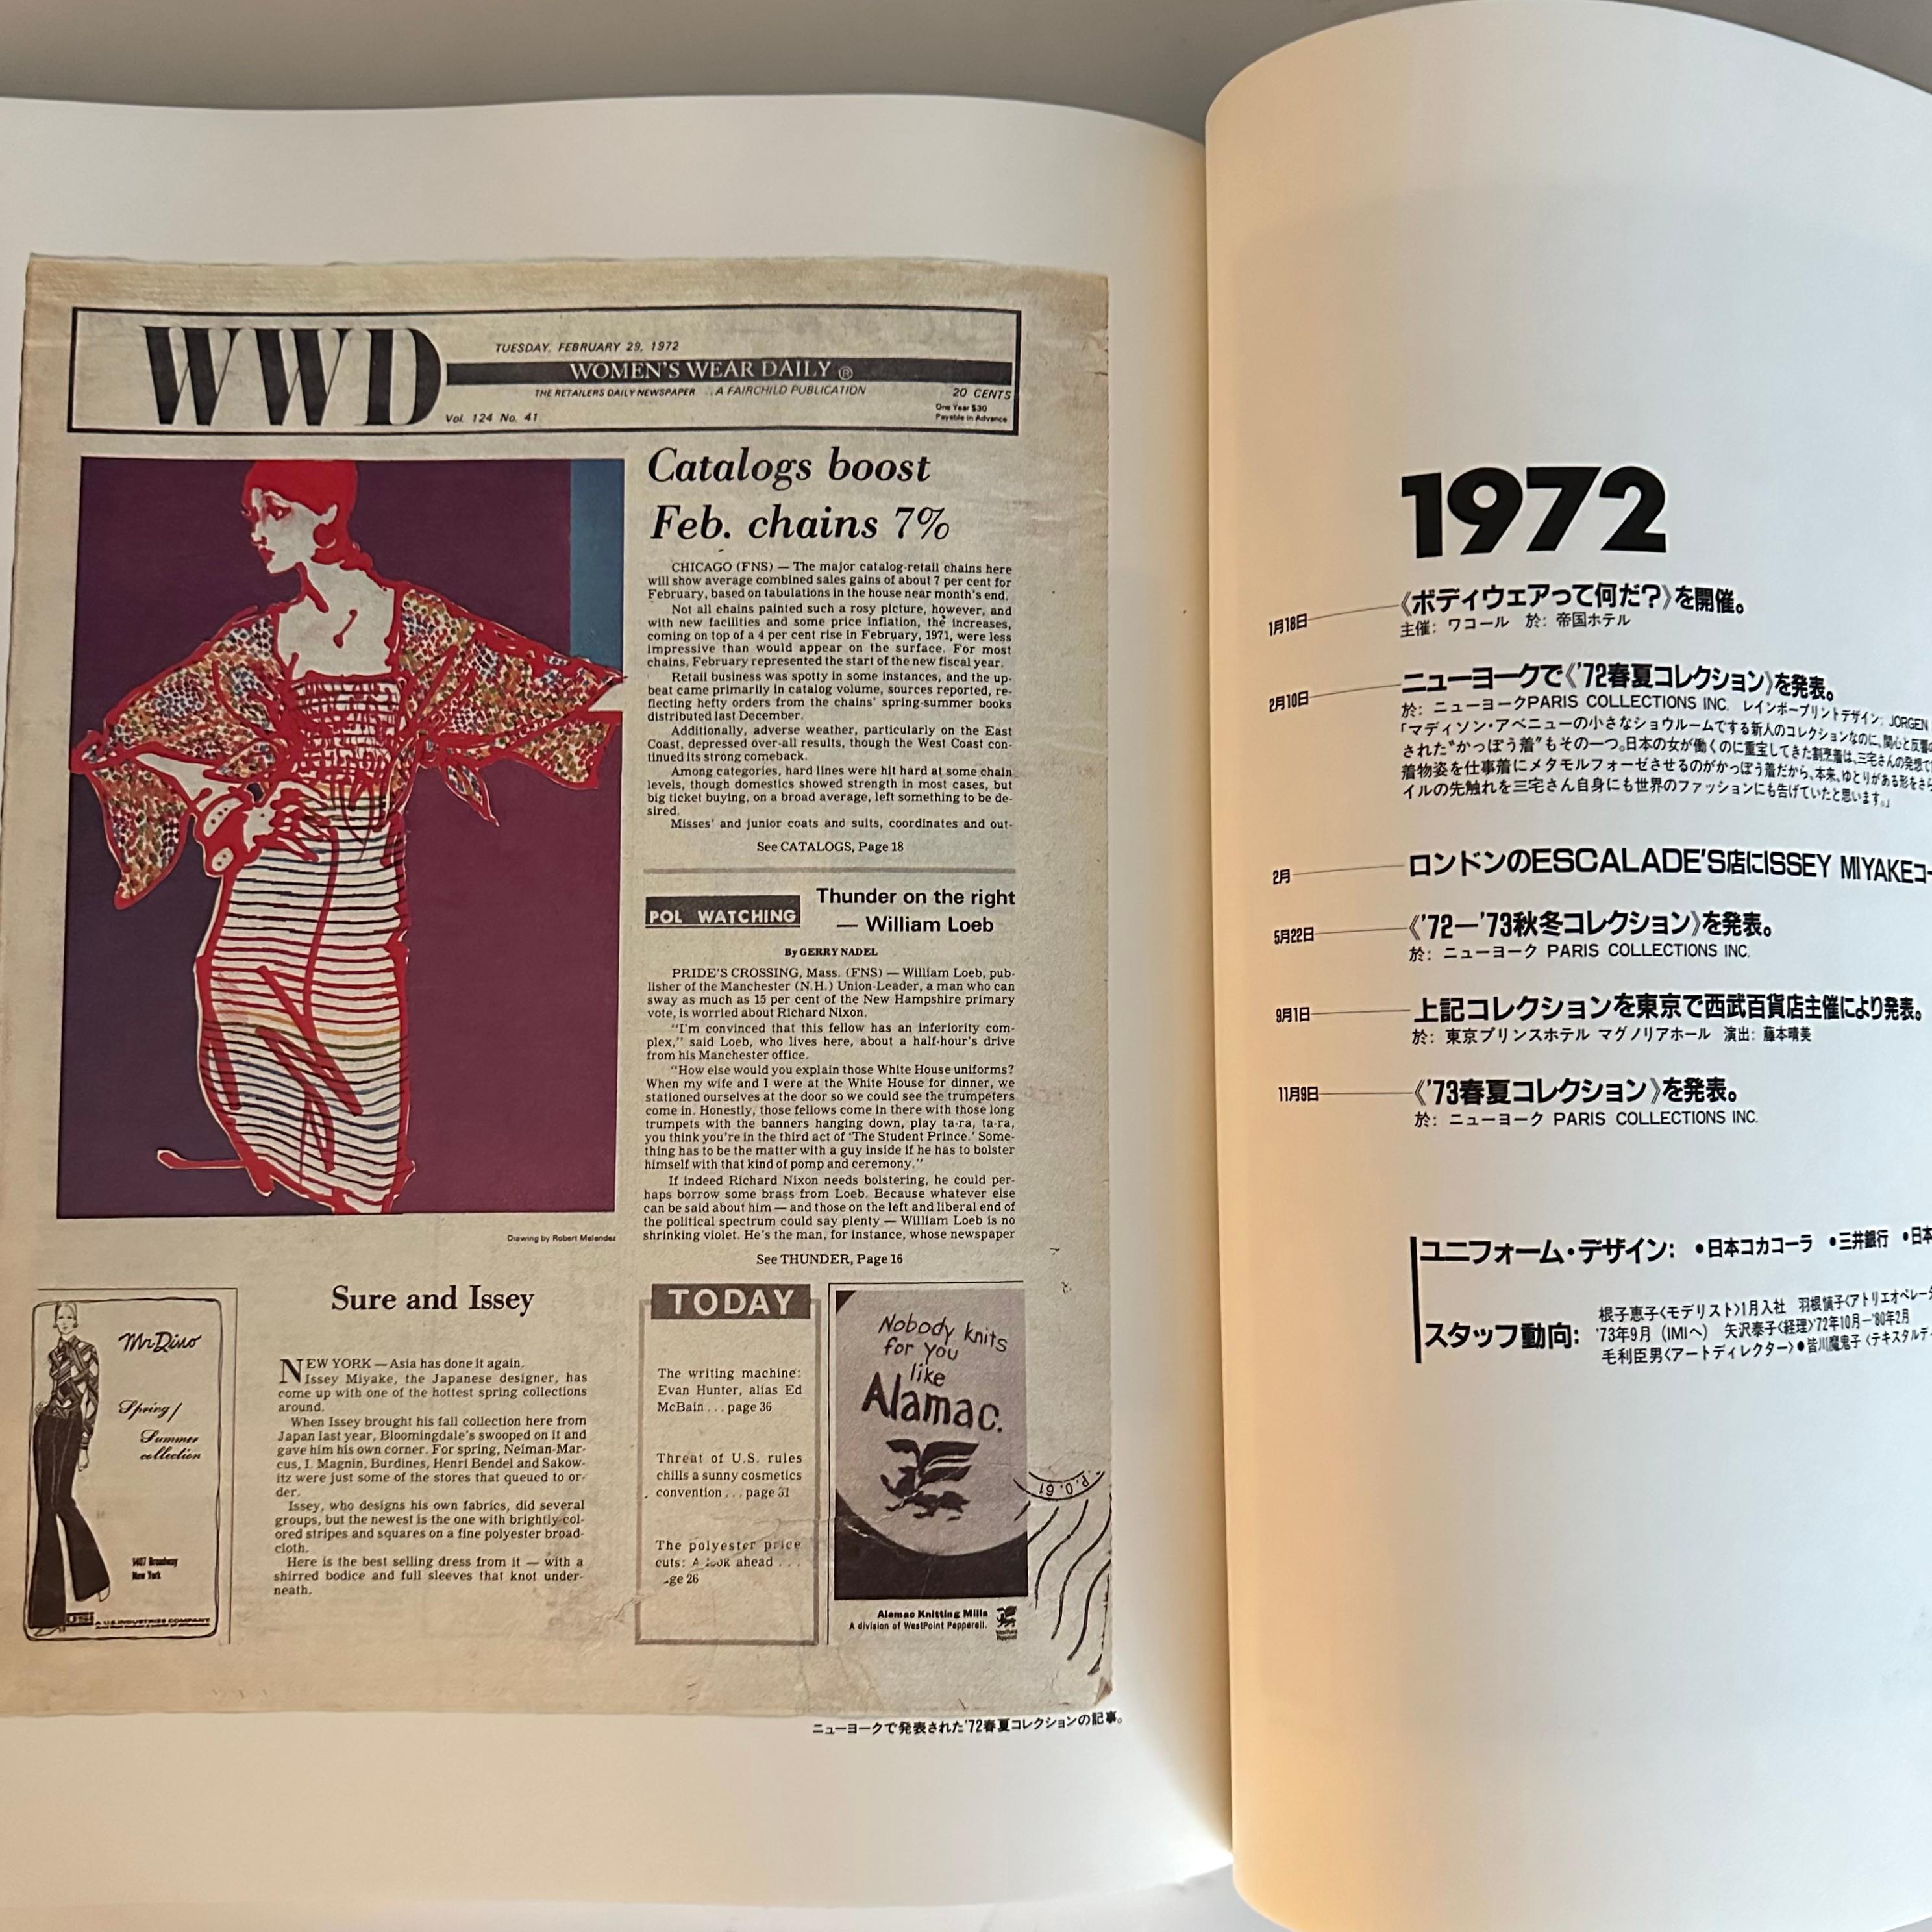 Late 20th Century Issey Miyake & Miyake Design Studio 1970 -1985: Works, Words, Years